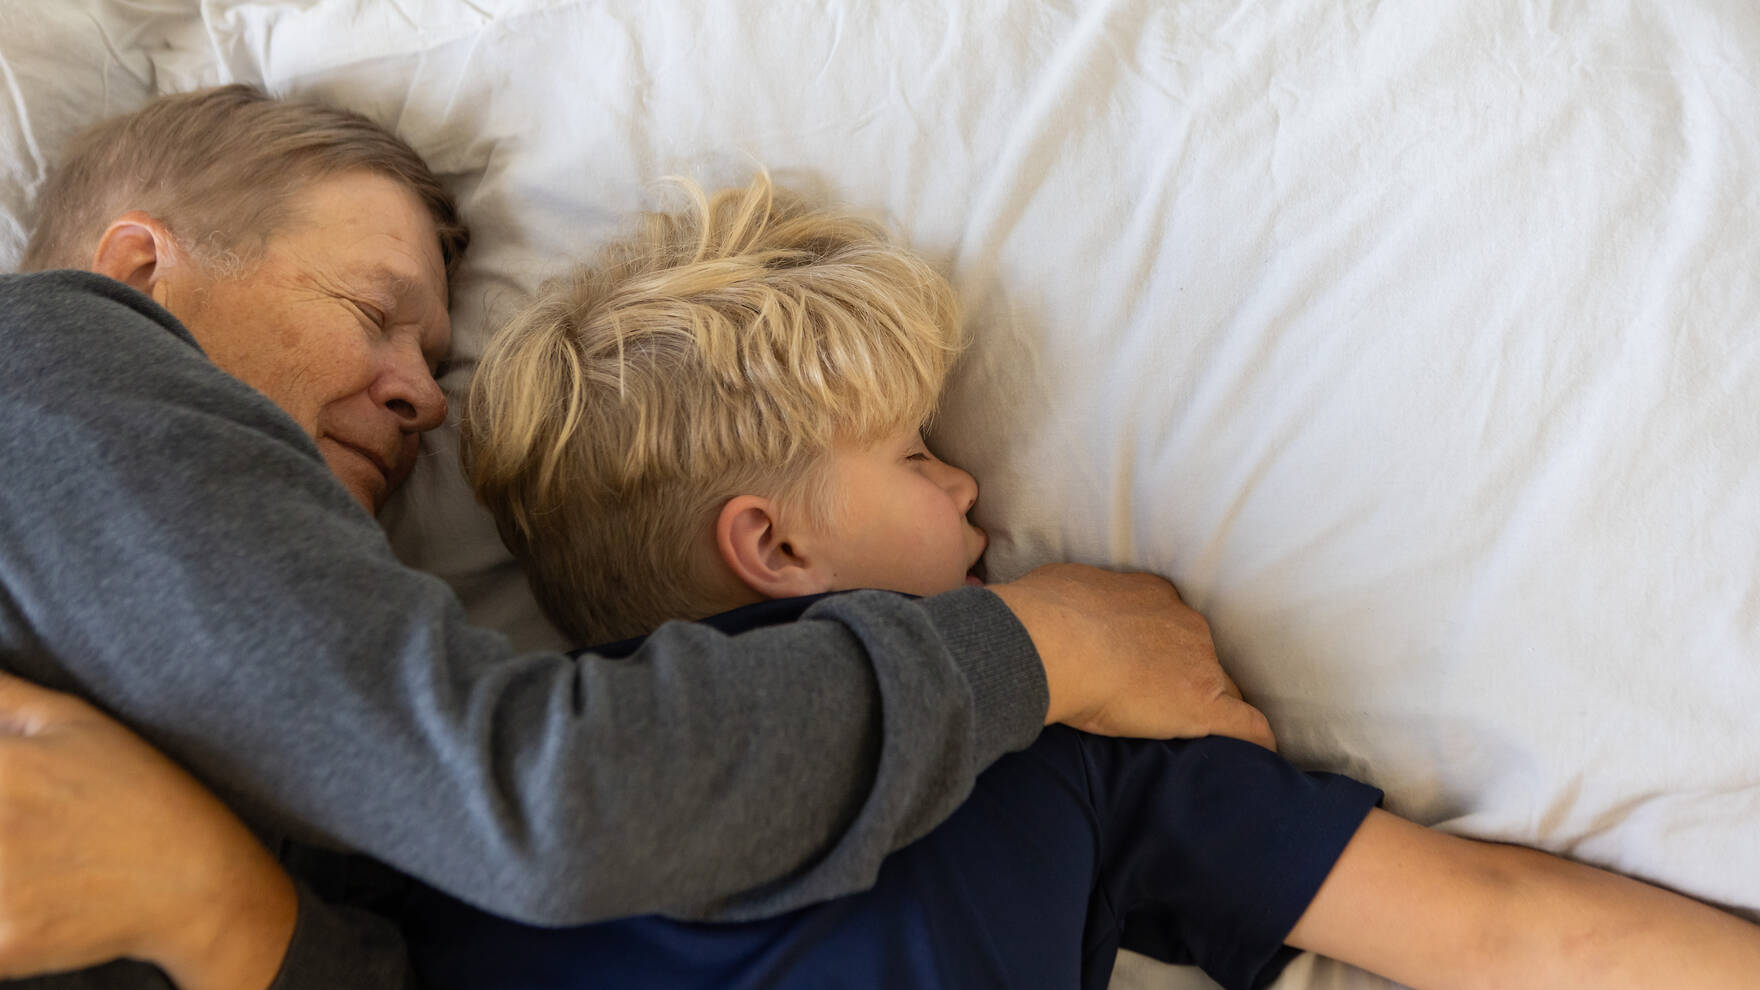 Vanhempi mies ja pieni poika makaavat silmän kiinni sängyllä, miehen käsi on pojan hartialla.